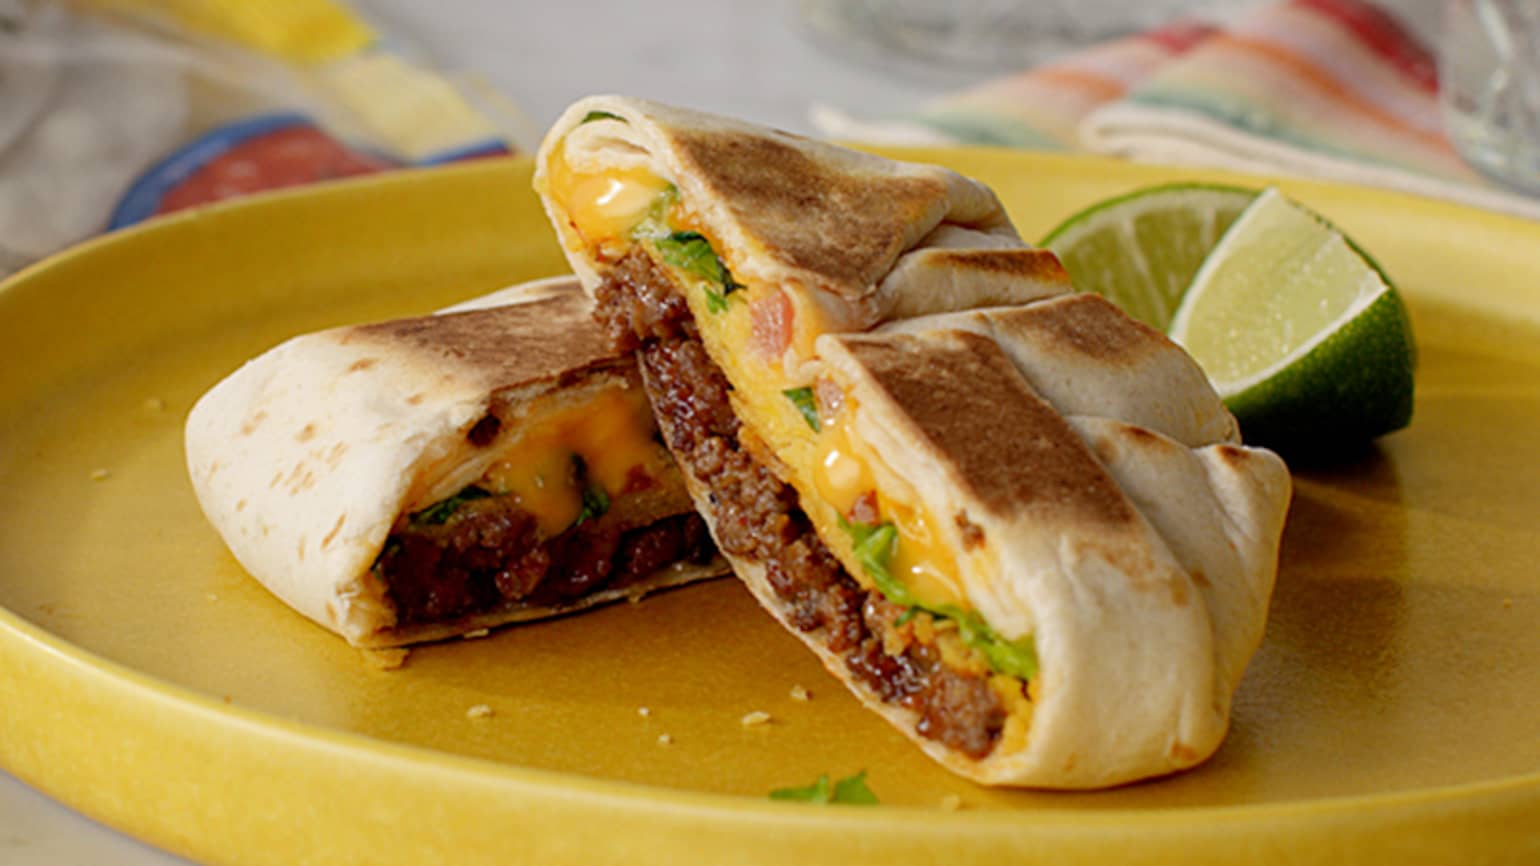 Mini Crunchy Taco Wraps - Old El Paso